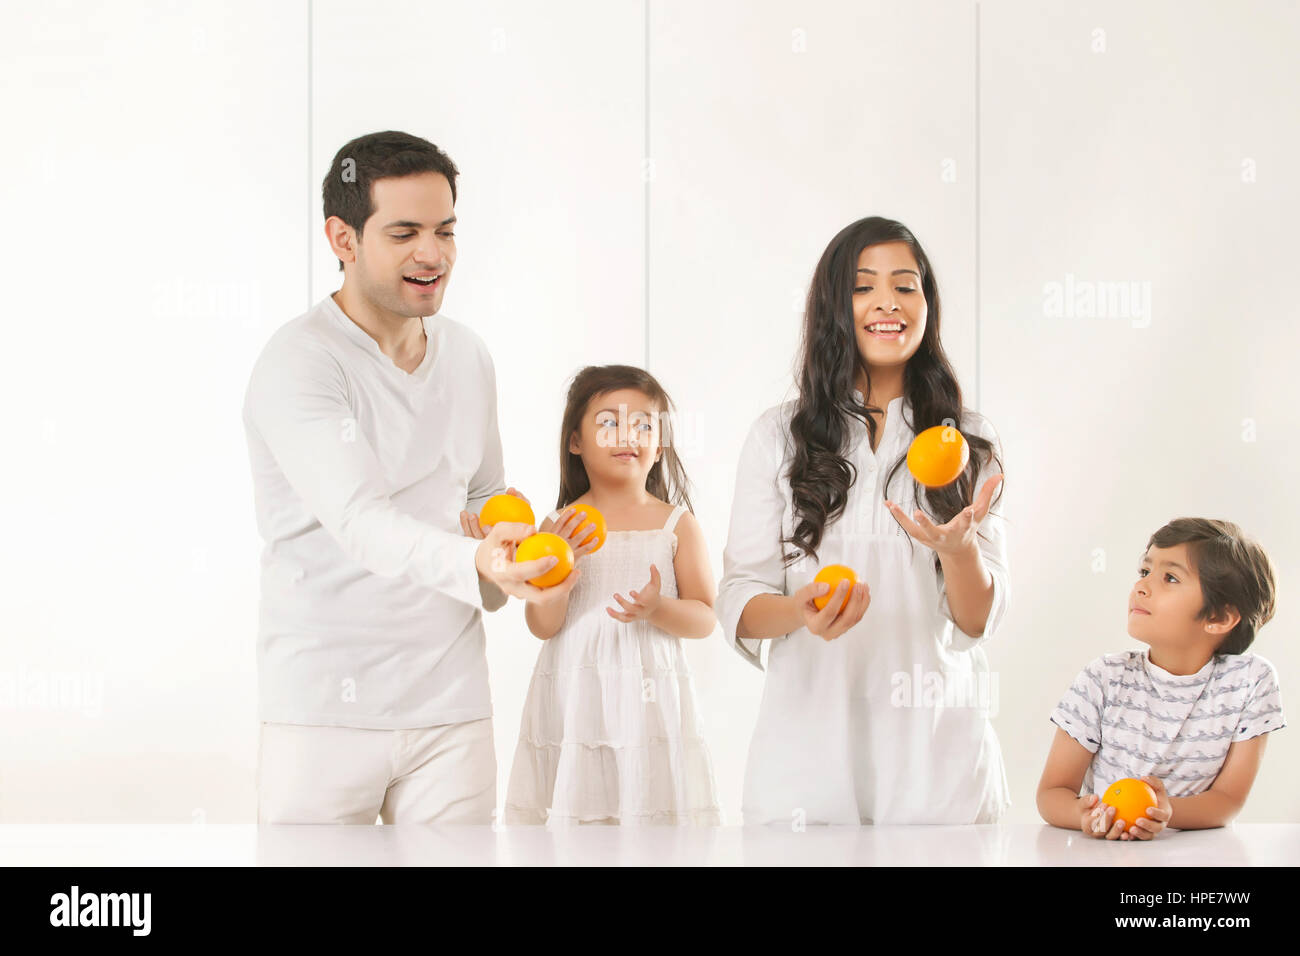 Familie jonglieren mit Orangen Stockfoto